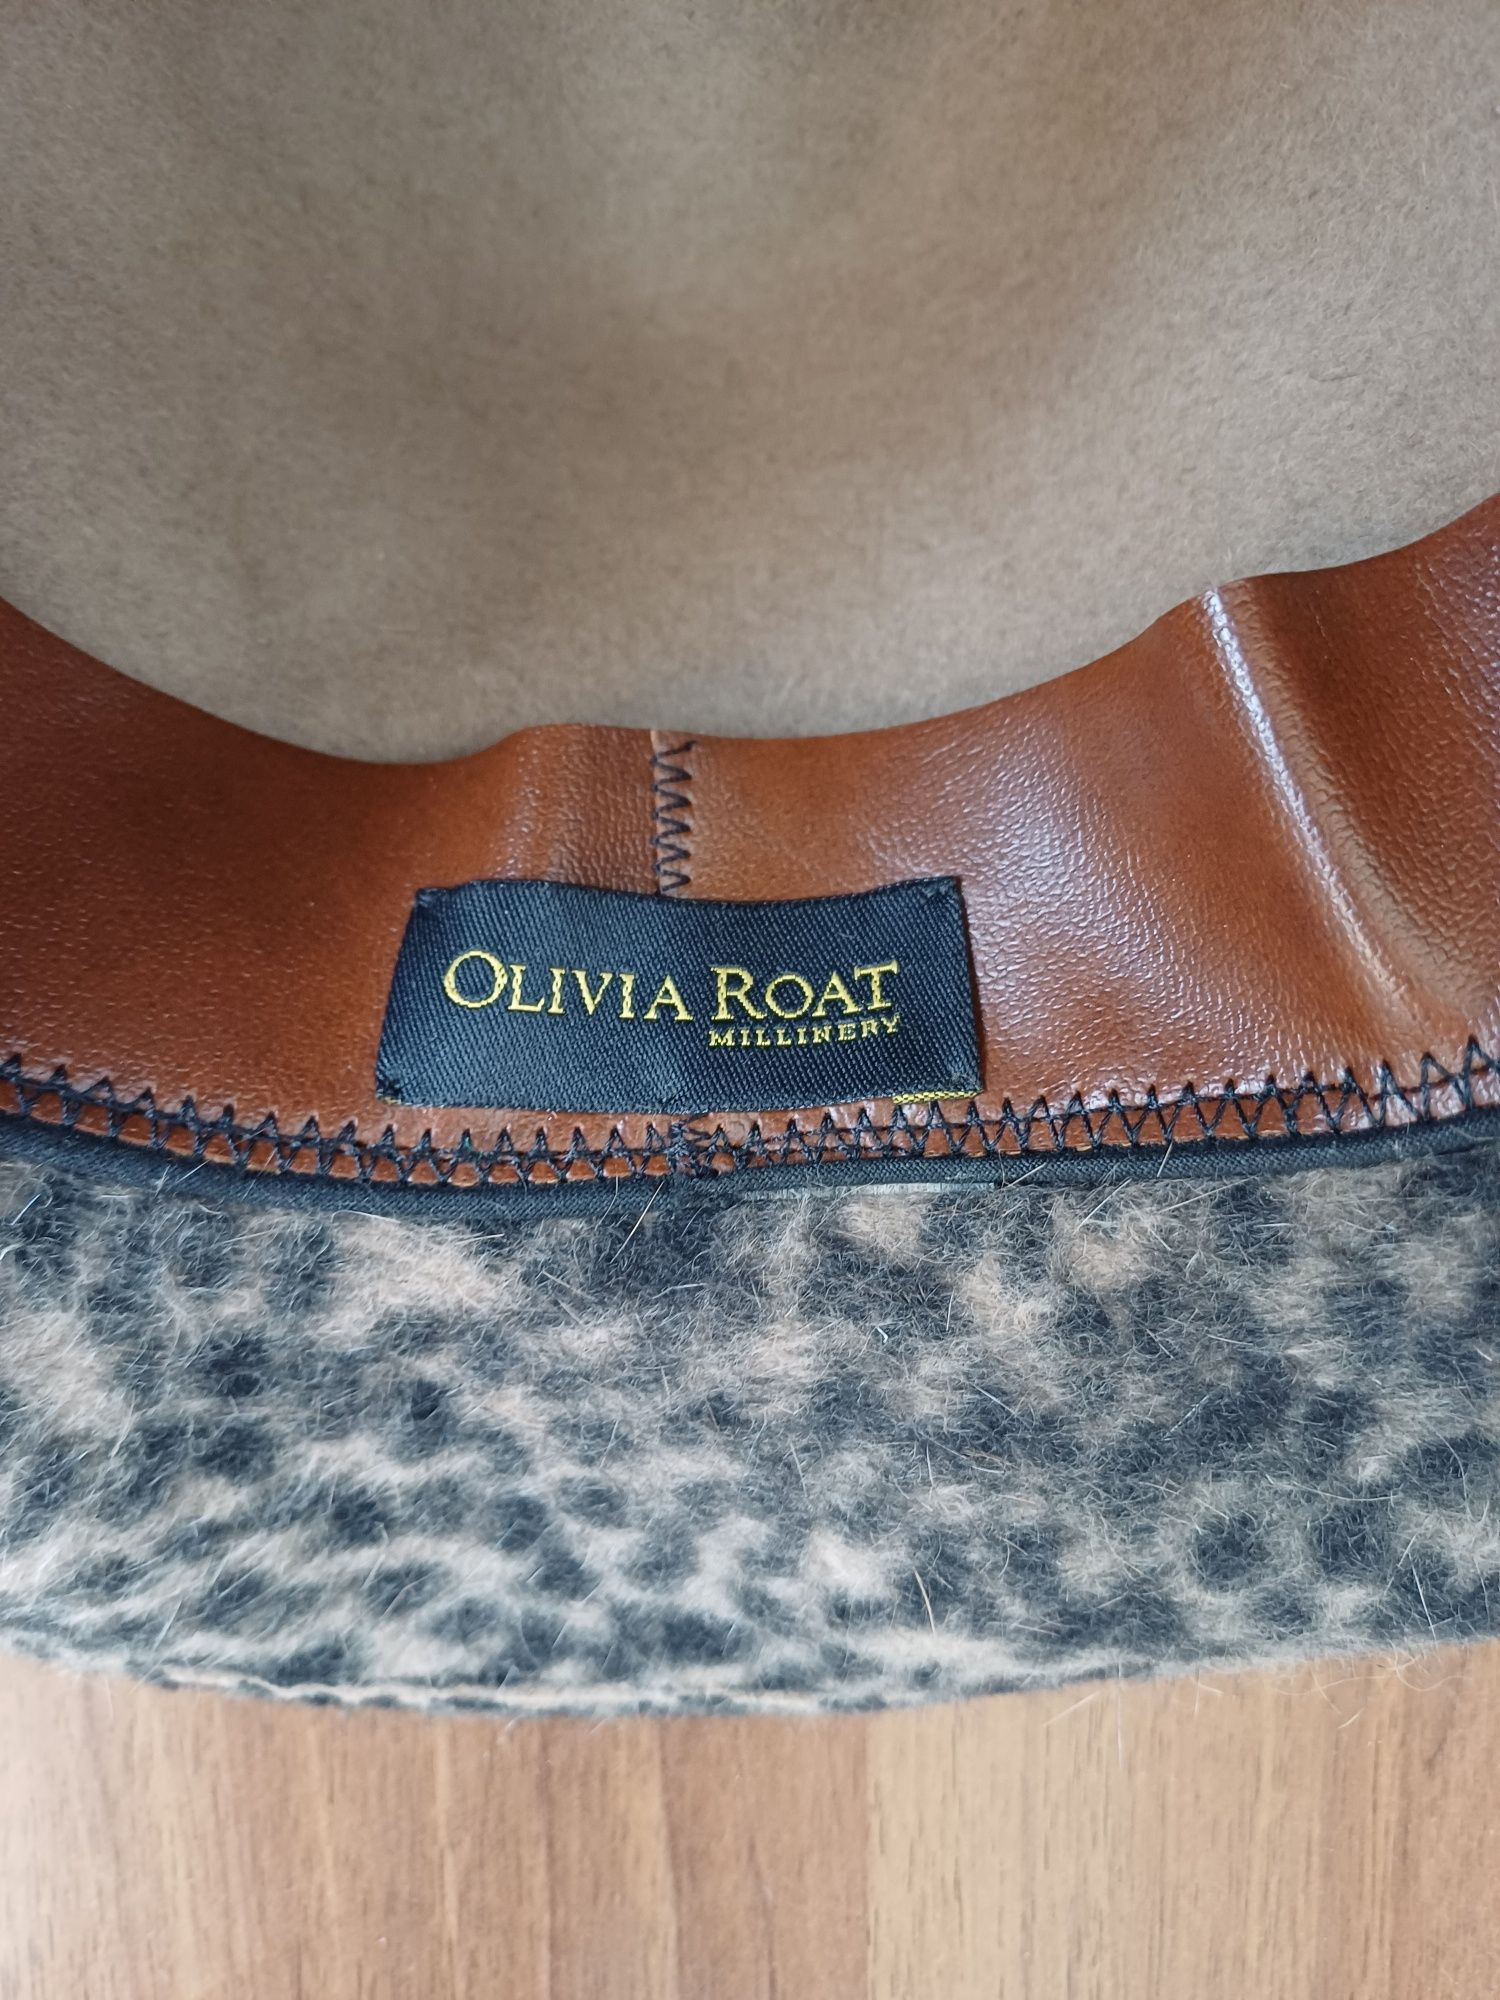 Дизайнерская шляпа OLIVIA ROAT оригинал 57-58